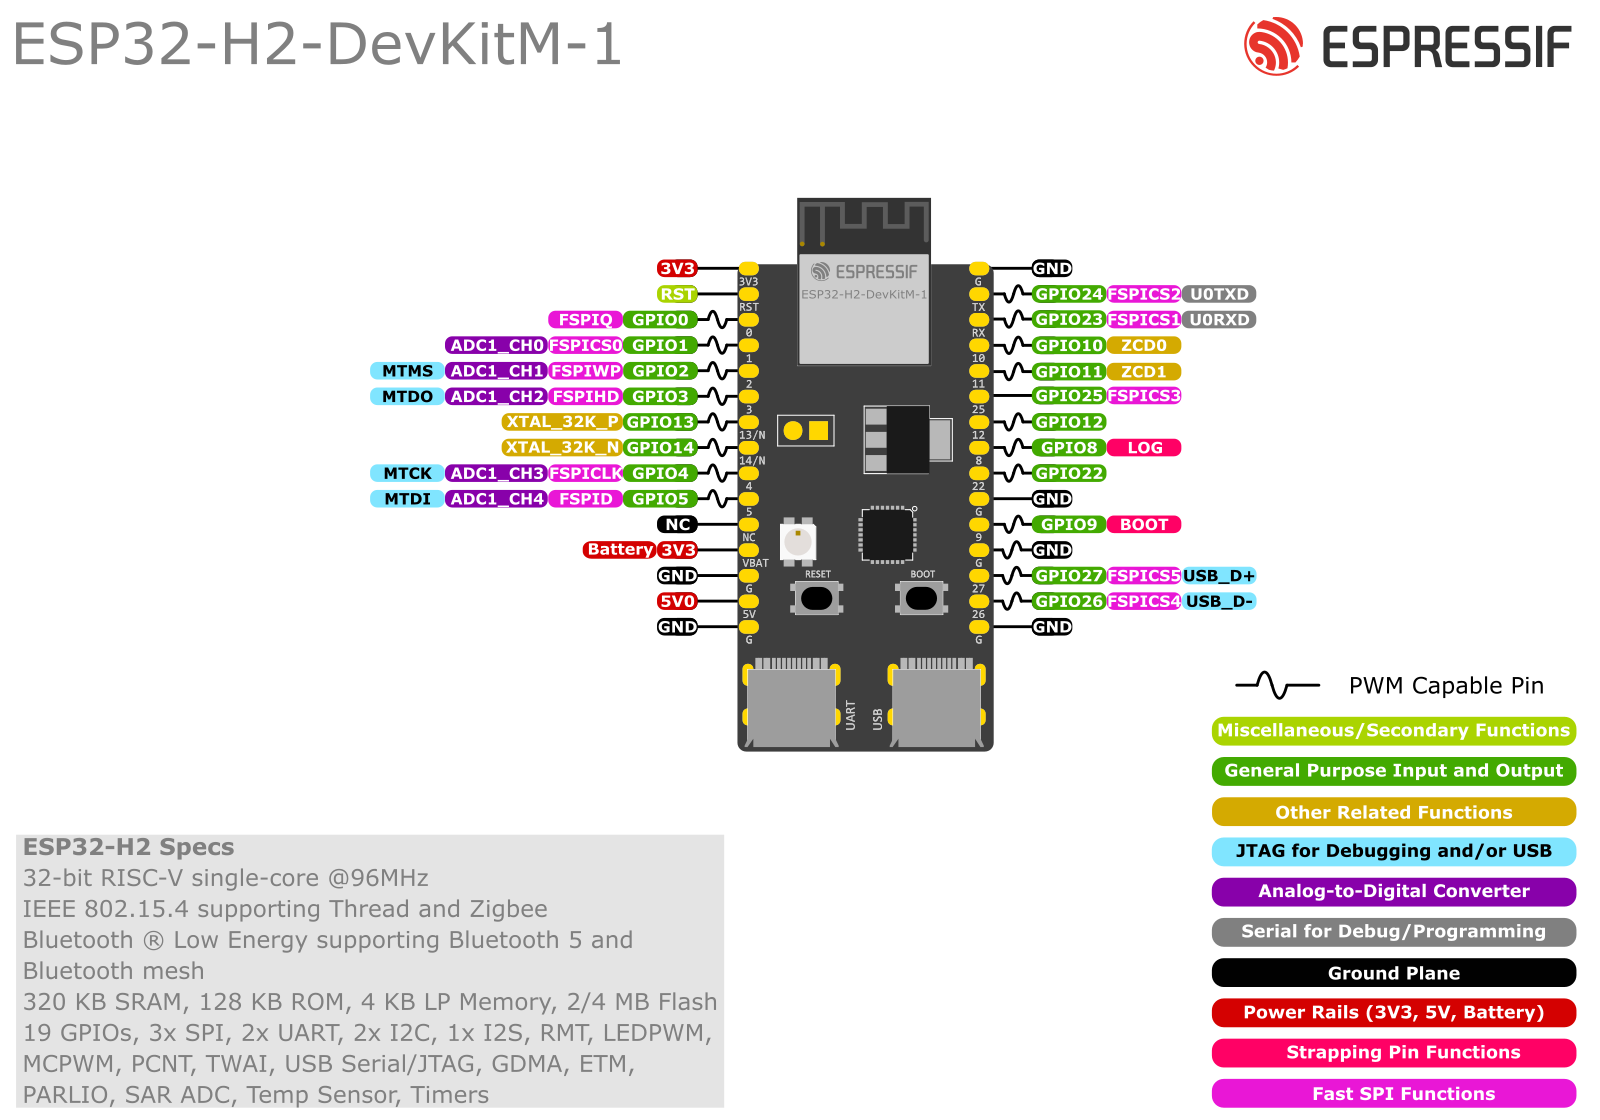 ESP32-H2-DevKitM-1 pin layout